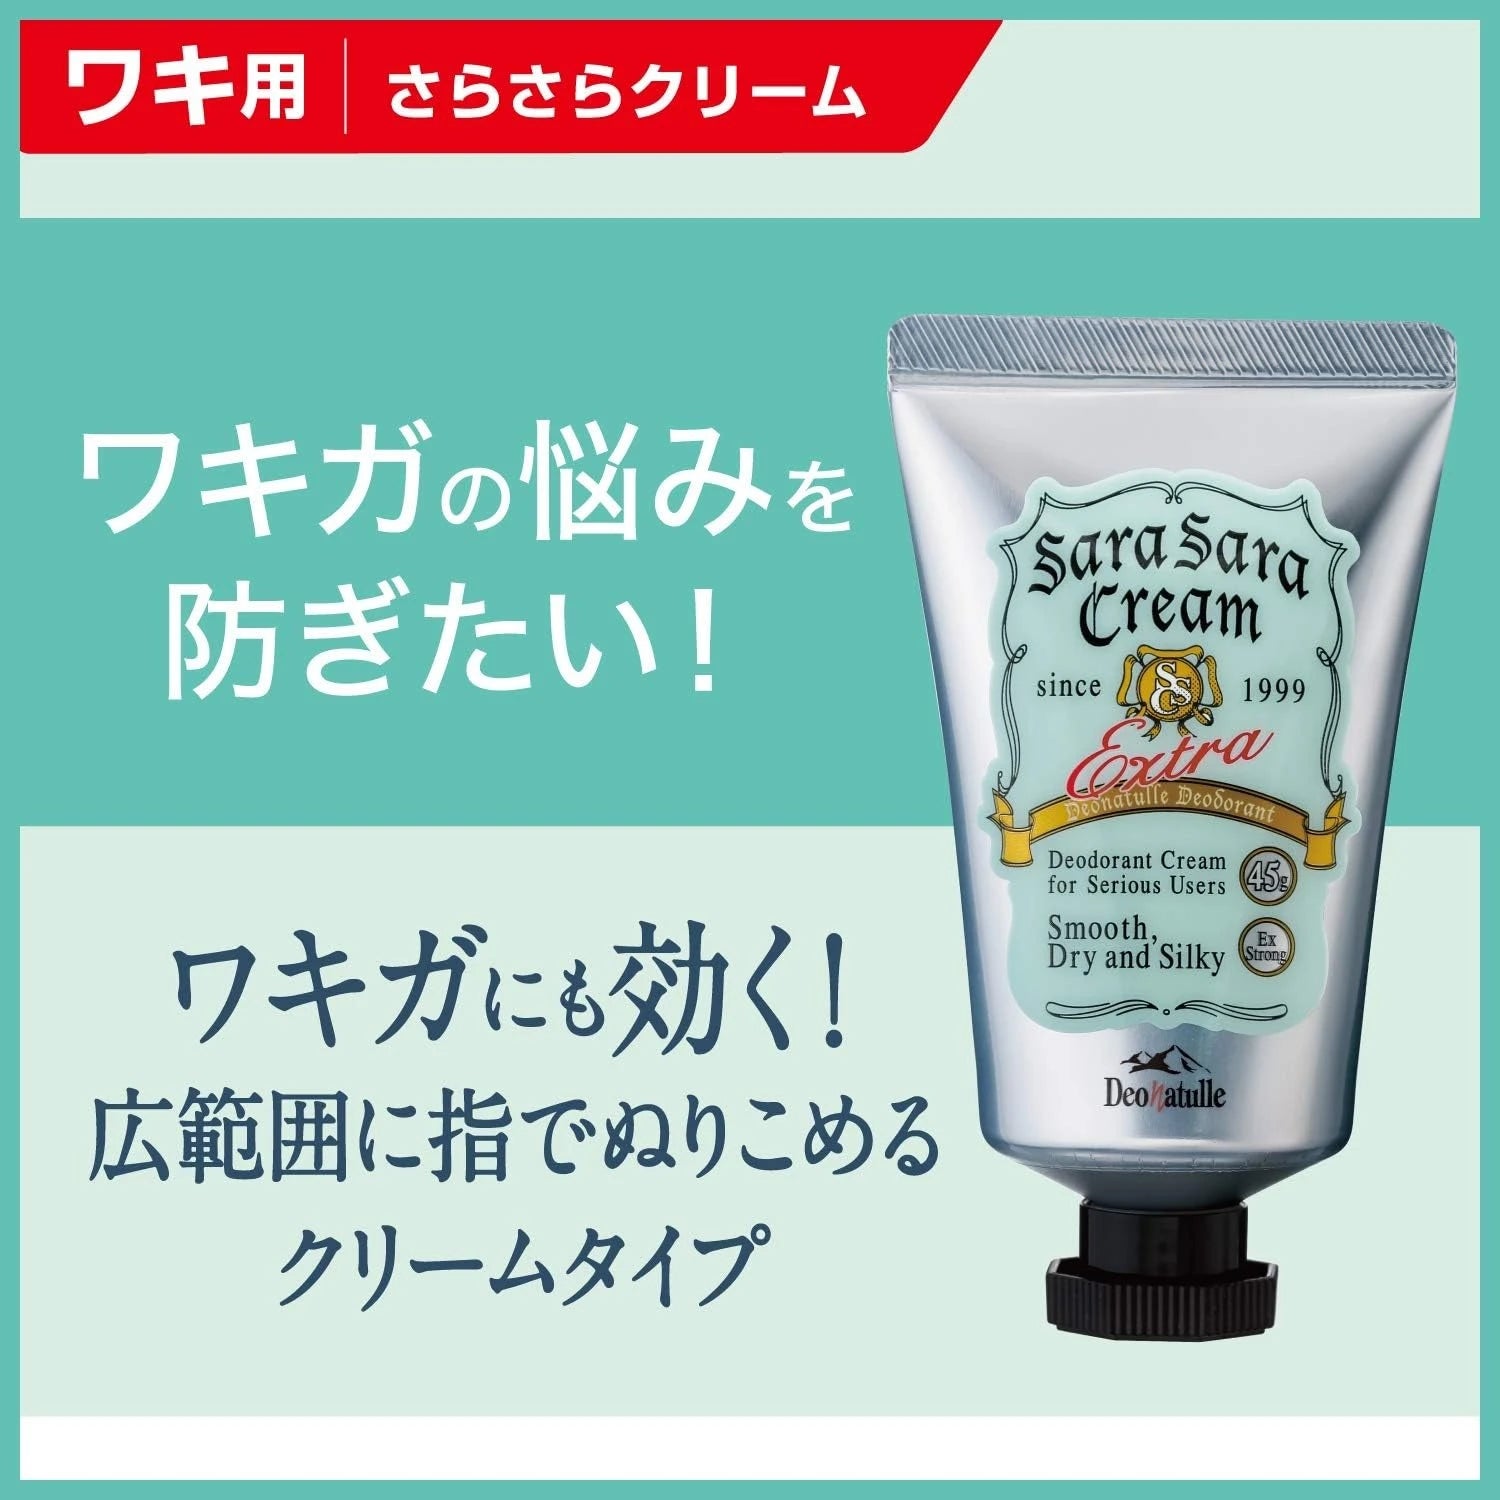 Deonatulle Sara Sara Cream Extra Deodorant Antiperspirant 45g